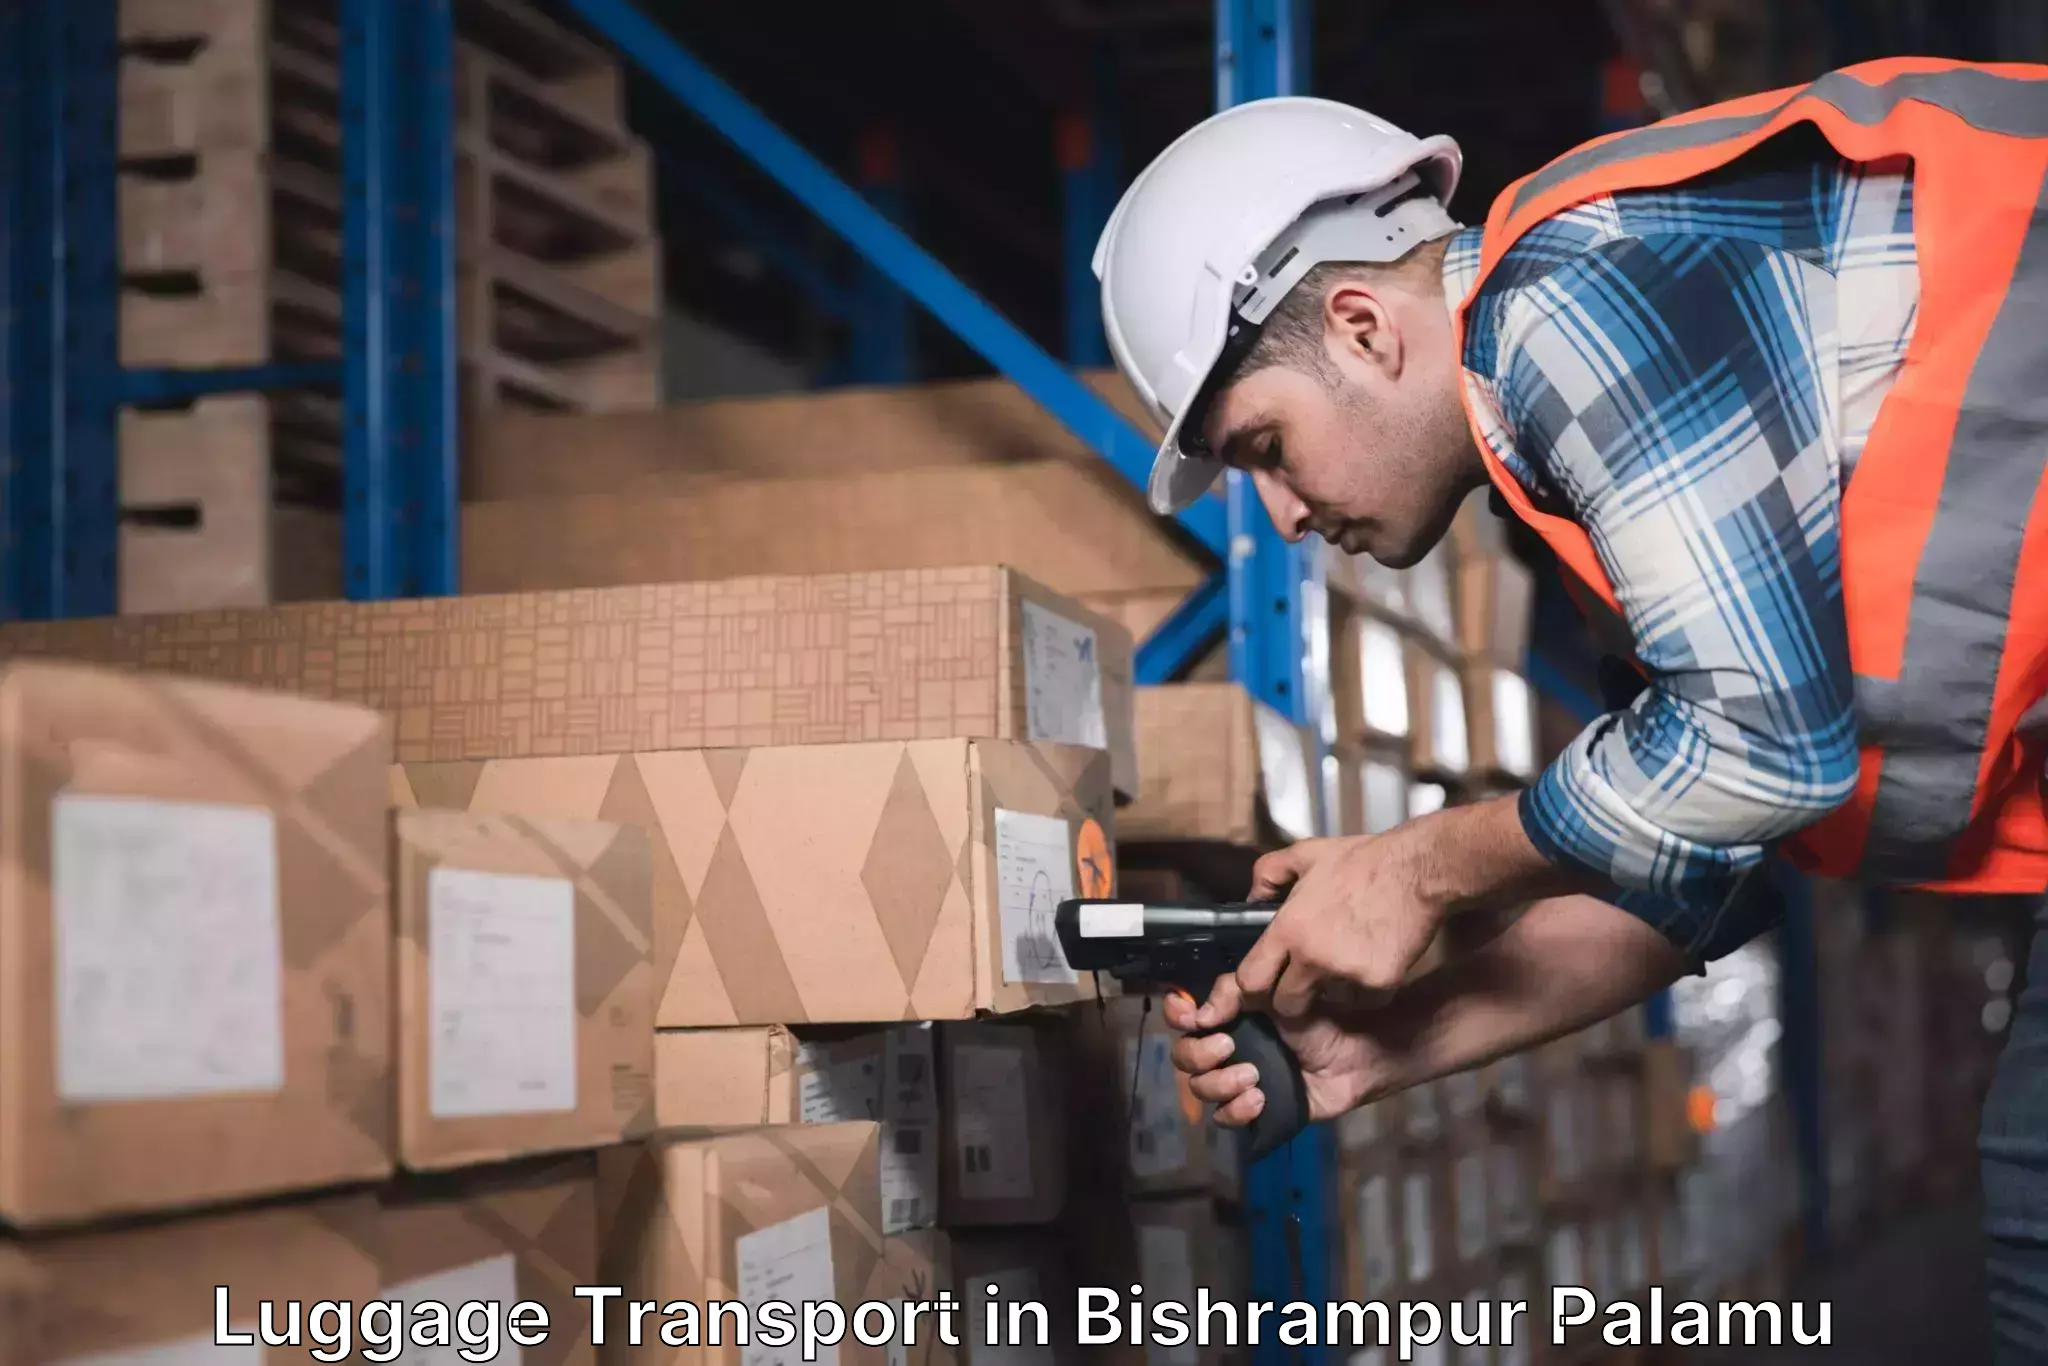 Luggage shipping consultation in Bishrampur Palamu